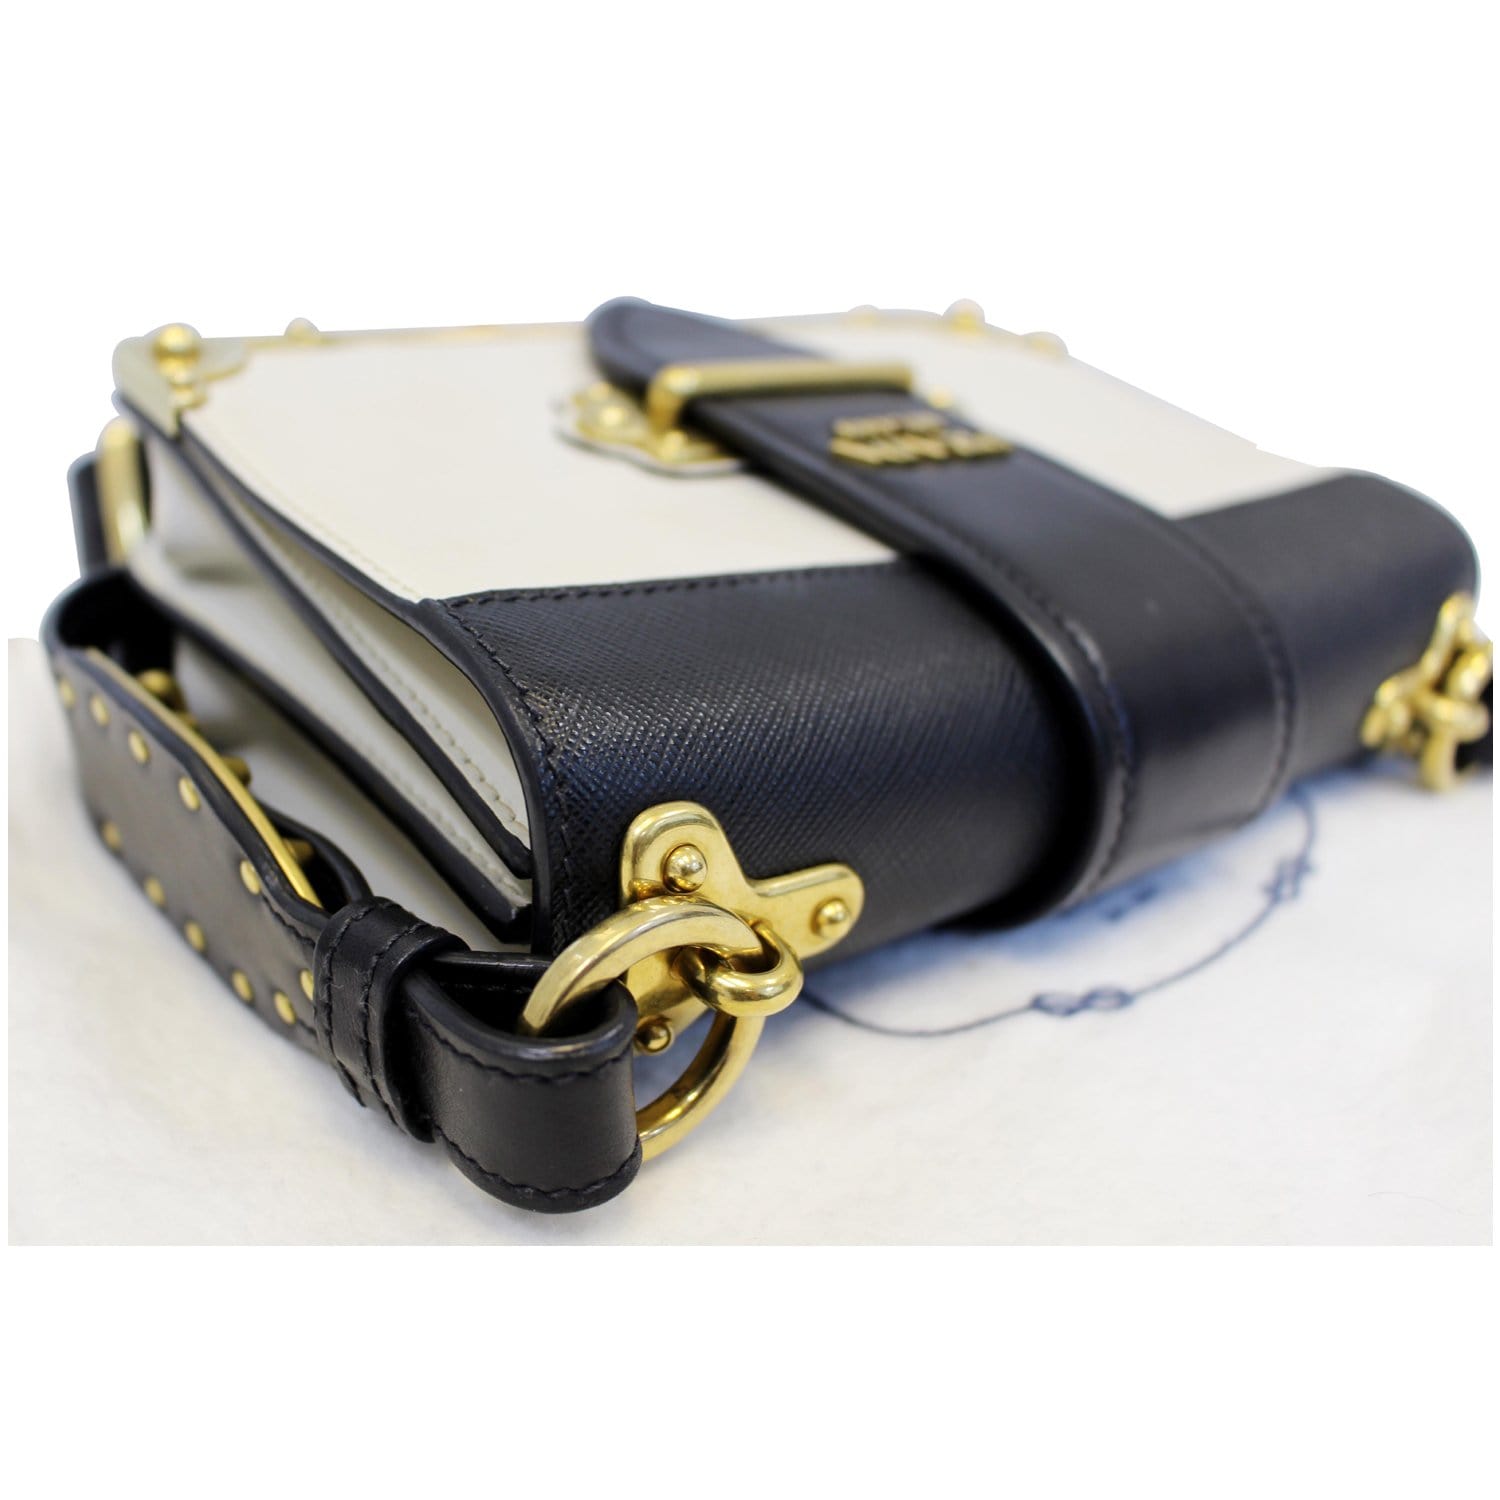 Prada Cahier Leather Shoulder Bag